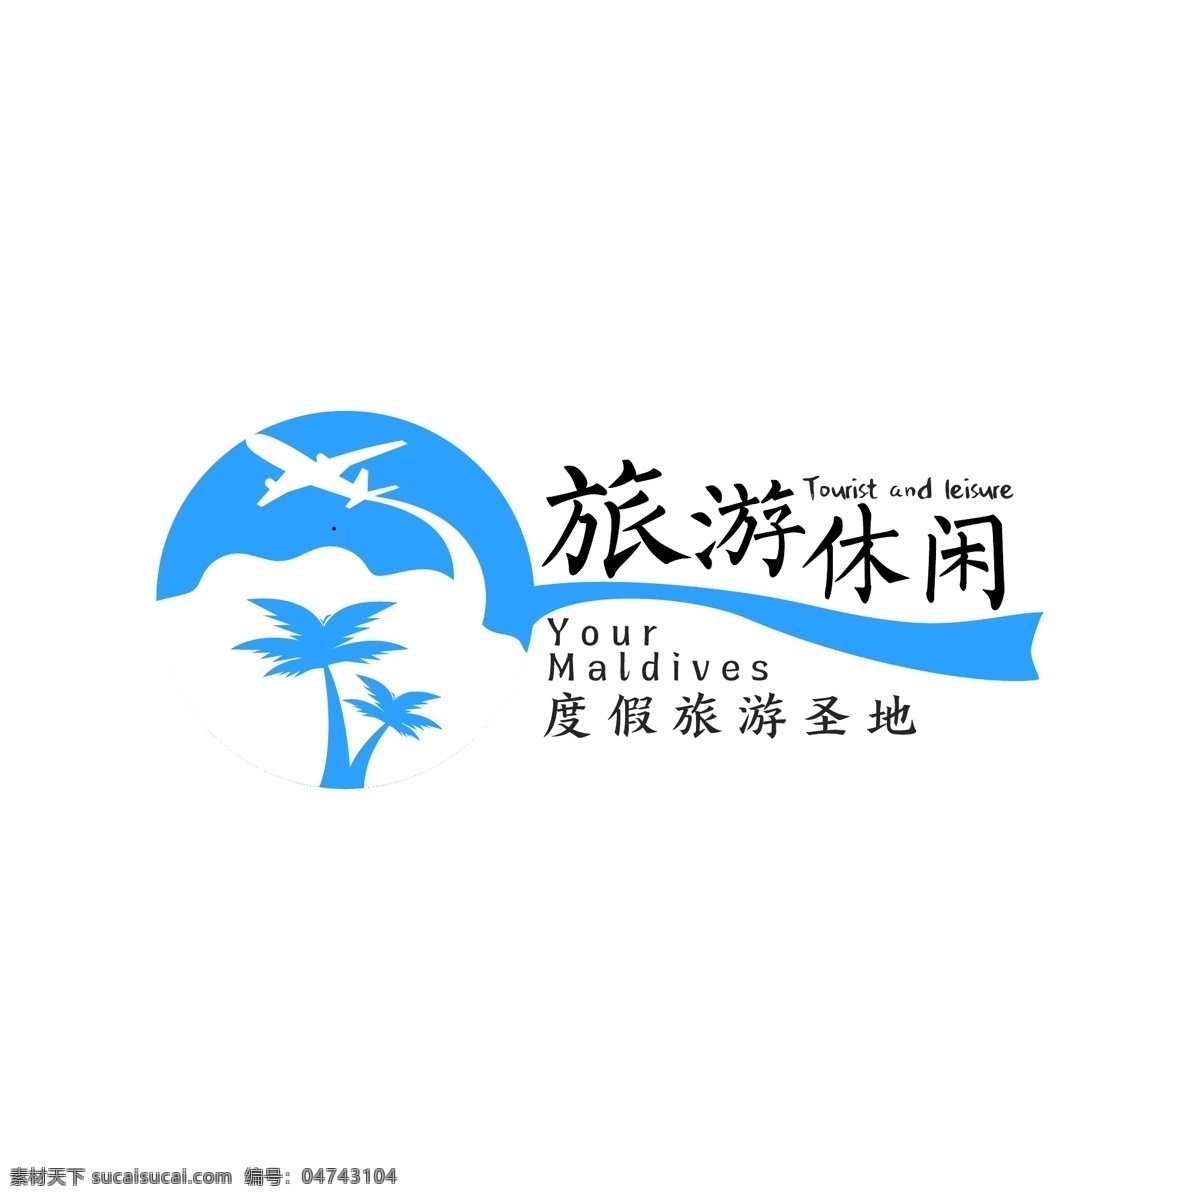 原创 旅游 字体 度假 休闲 娱乐 logo 航空 服务 字体设计 标志